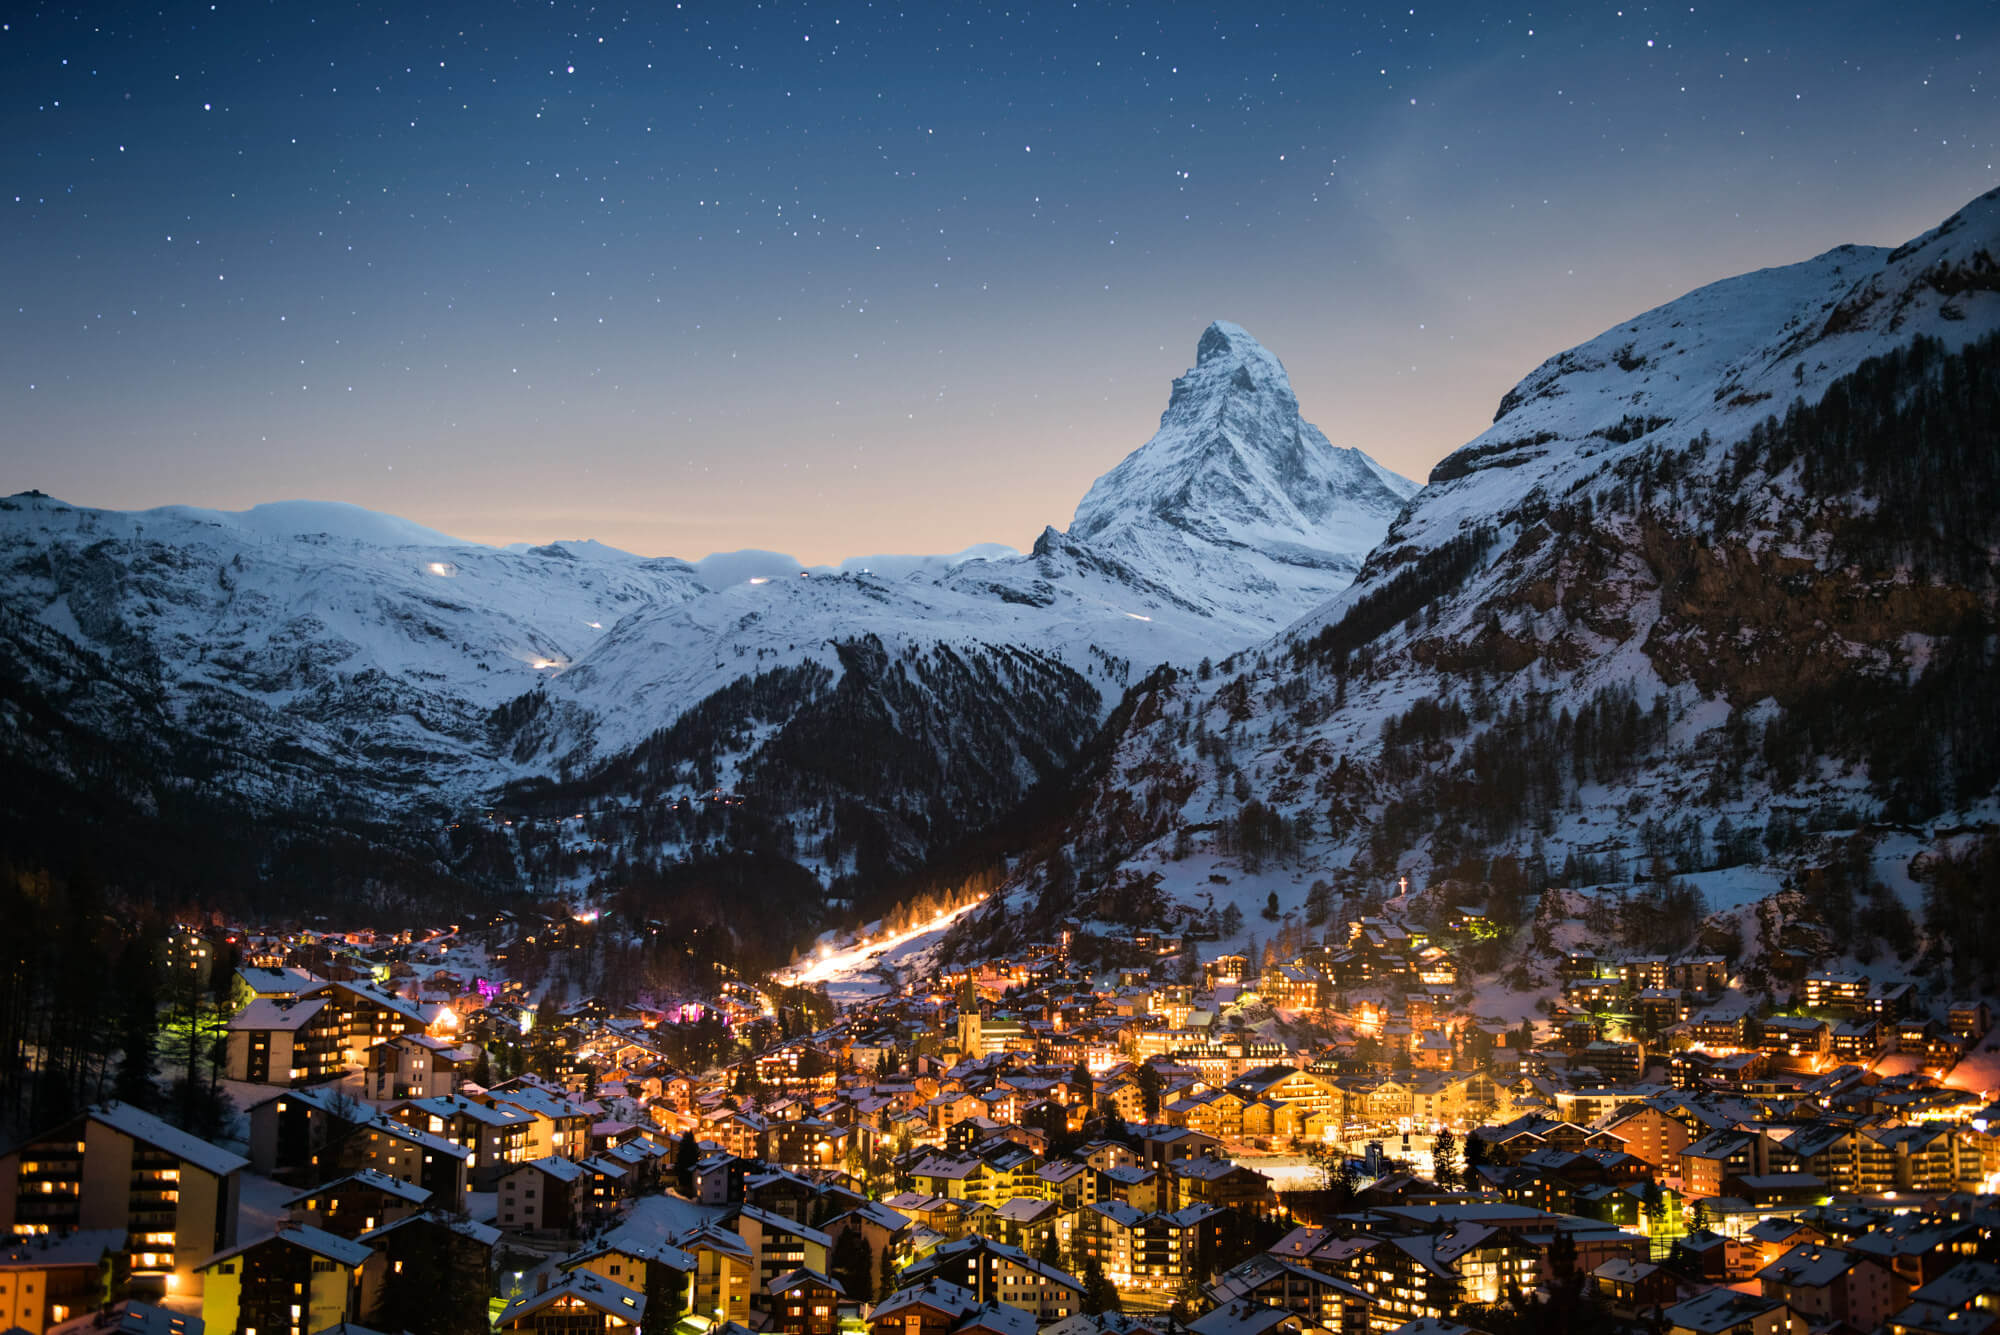 Honeymoon places in Switzerland: Zermatt